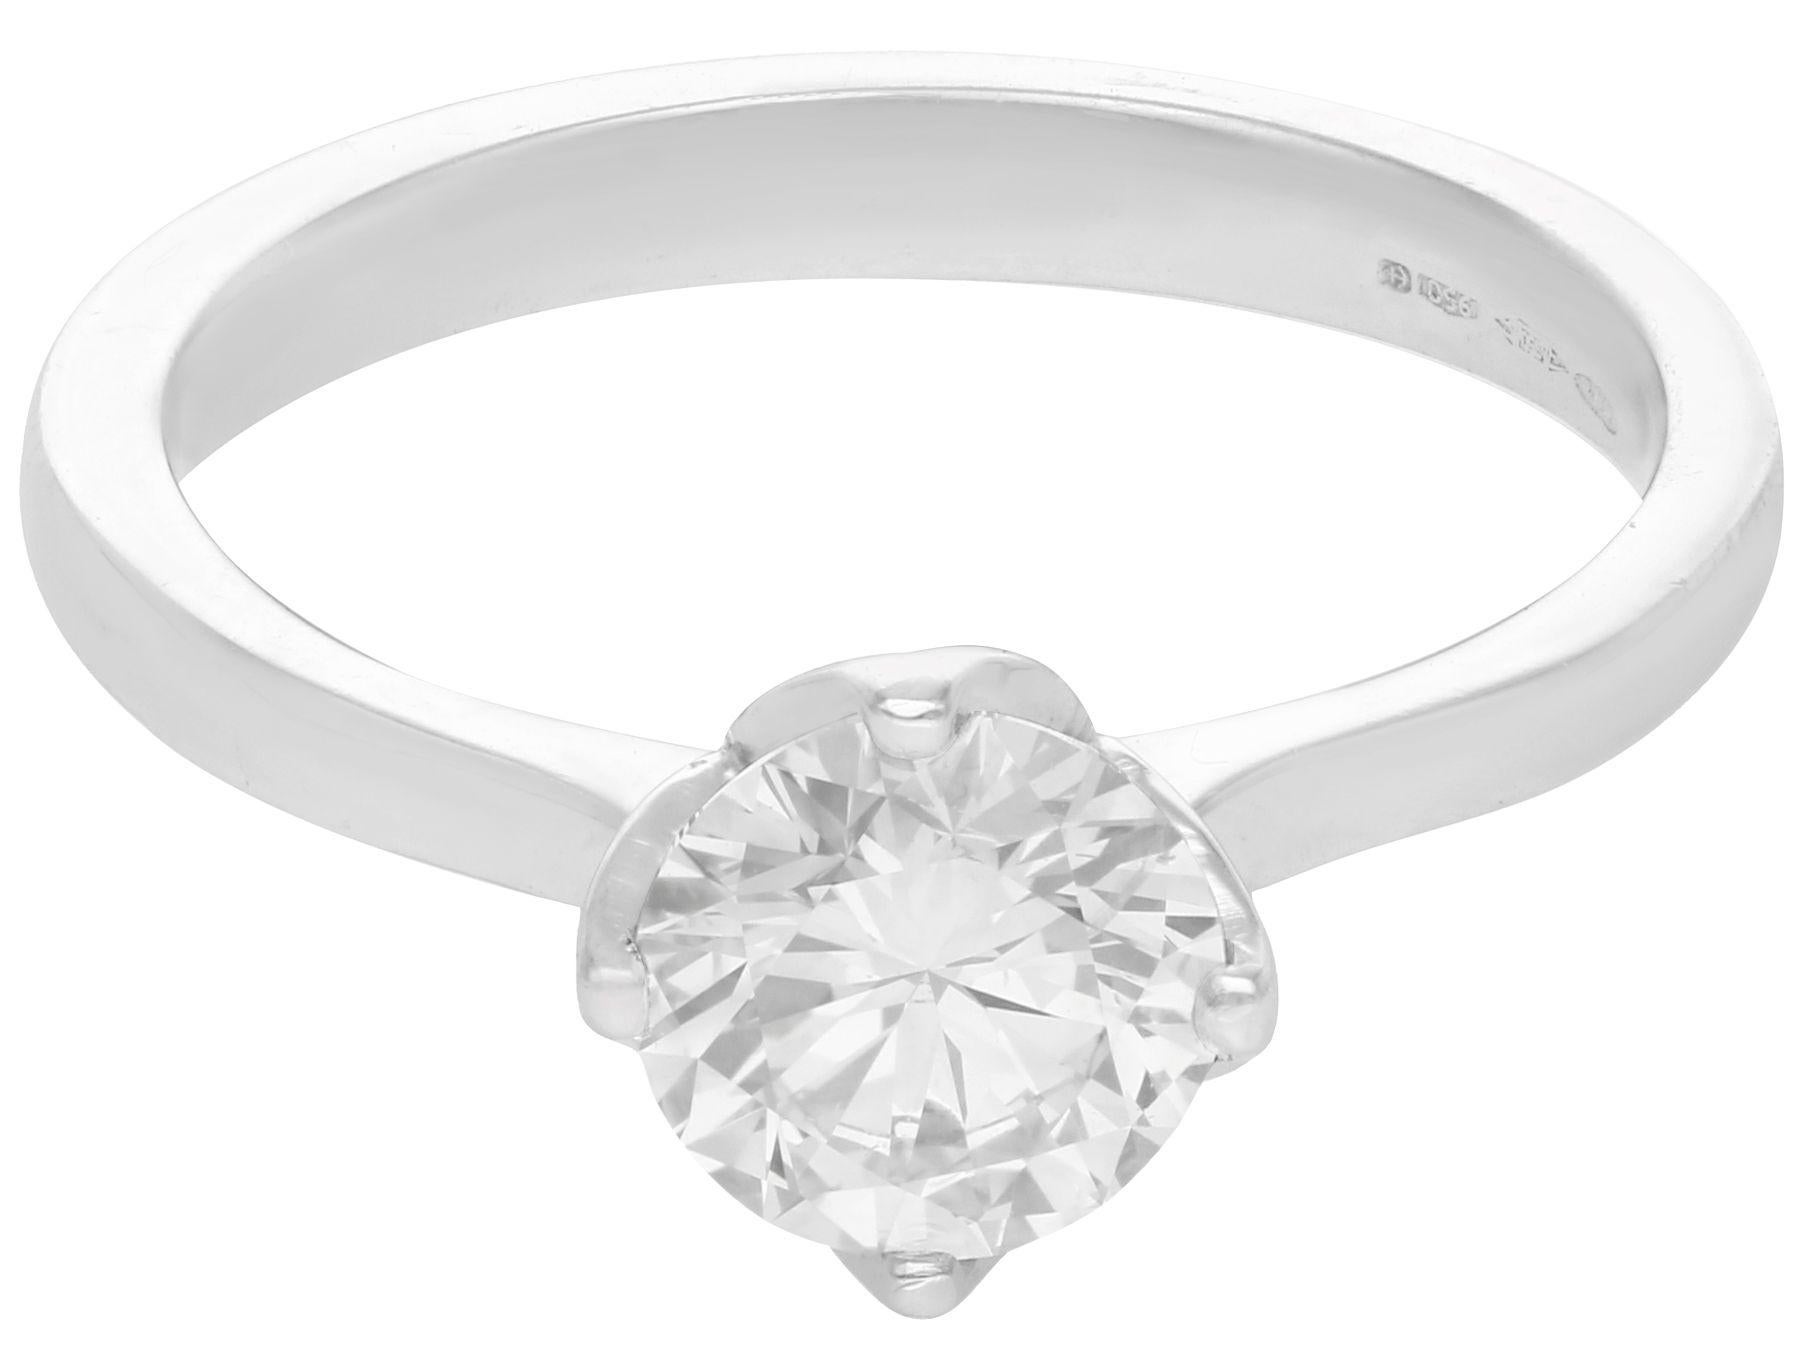 Round Cut 1.01 Carat Diamond and Platinum Solitaire Engagement Ring